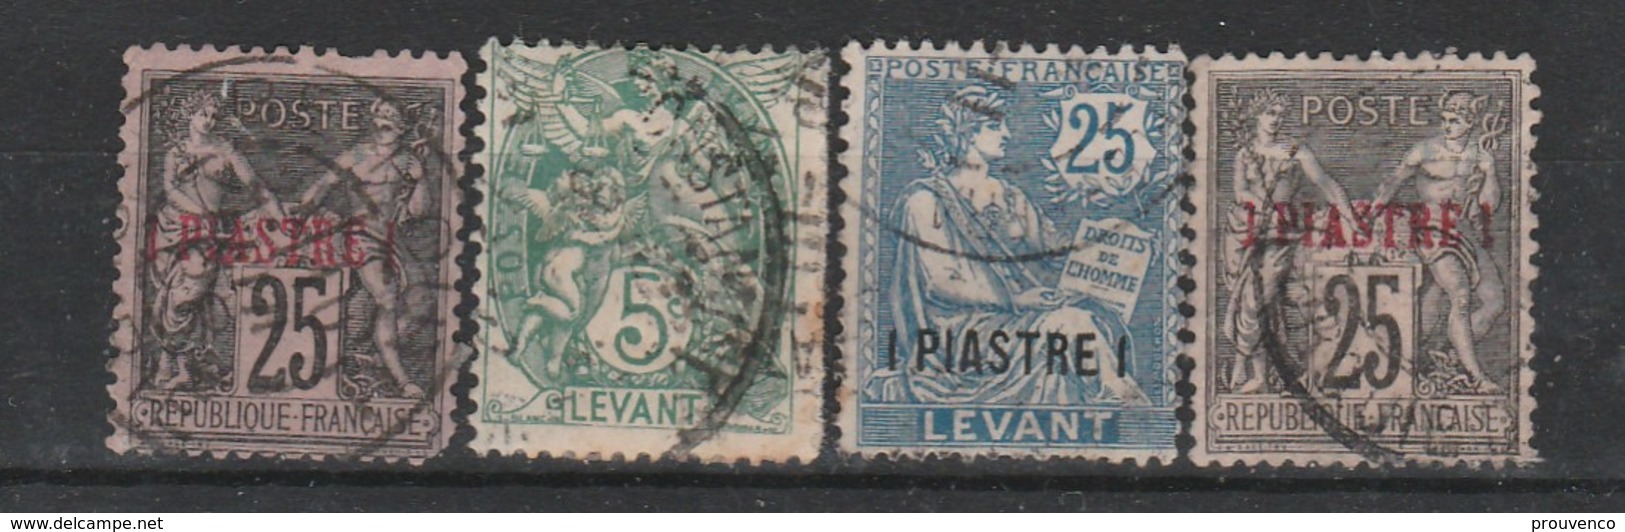 LEVANT BUREAUX FRANCAIS   1885 -1922   2E CHOIX - Usati